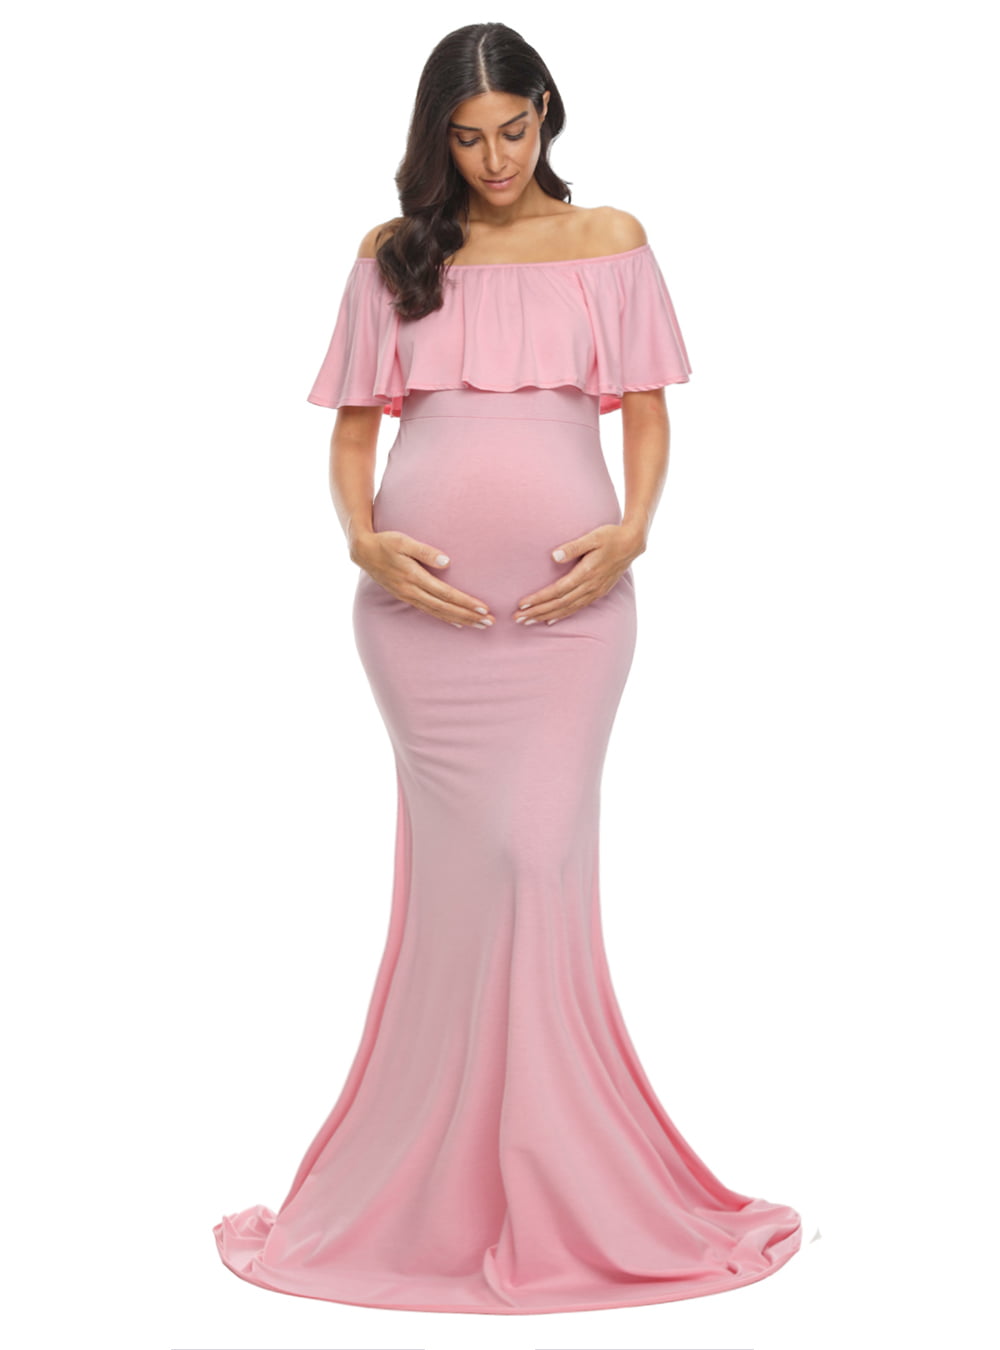 Ecavus Womens Off Shoulder Maternity Dress for Baby Shower Sage L